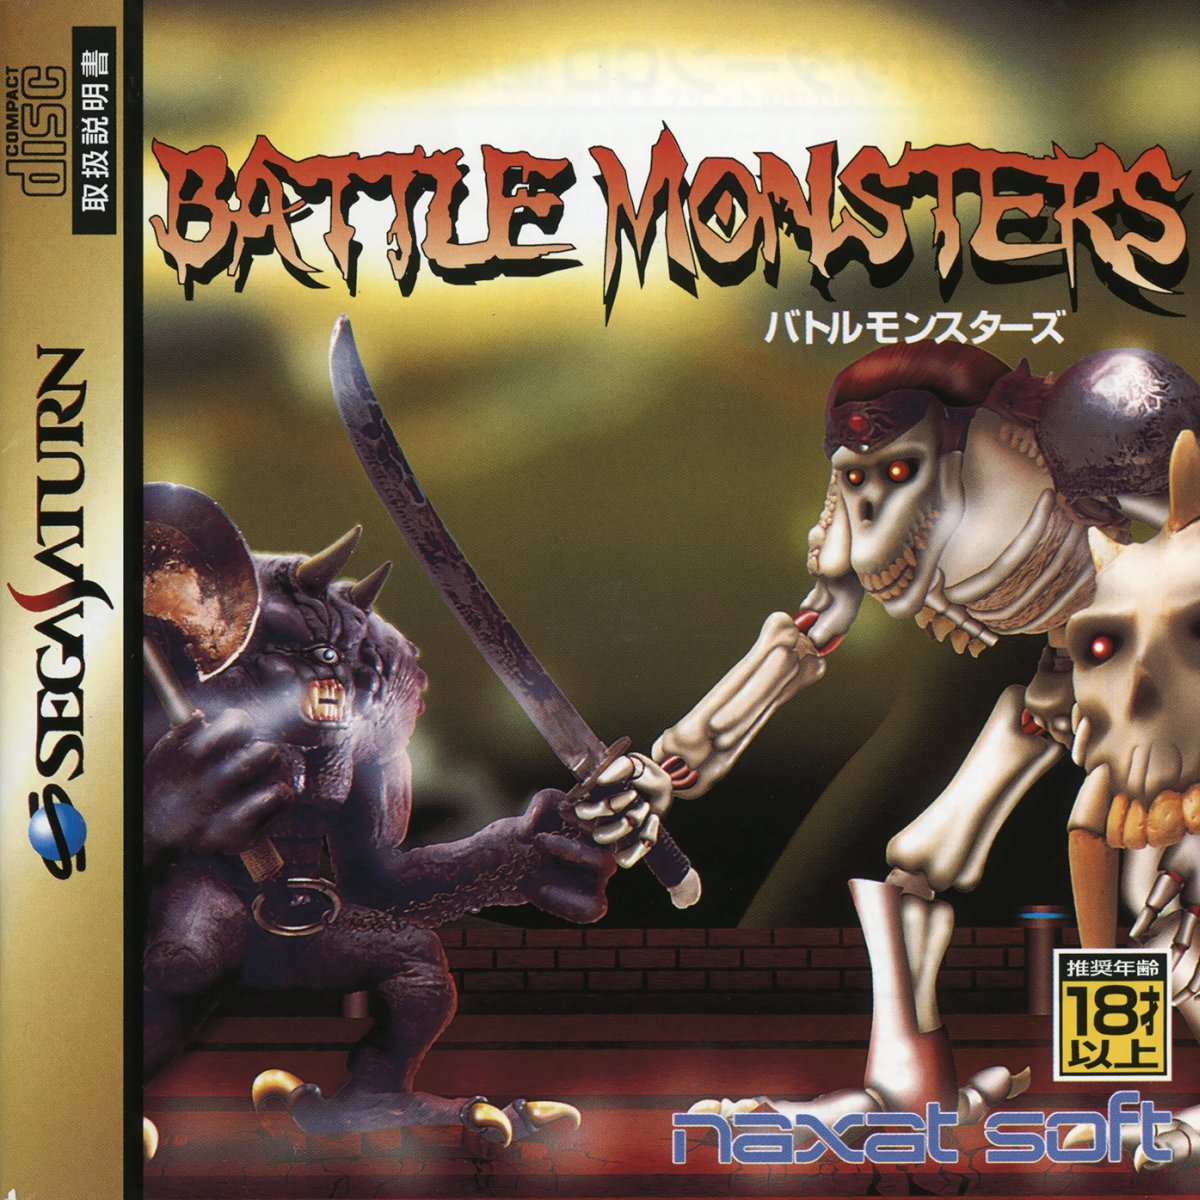 Capa do jogo Battle Monsters